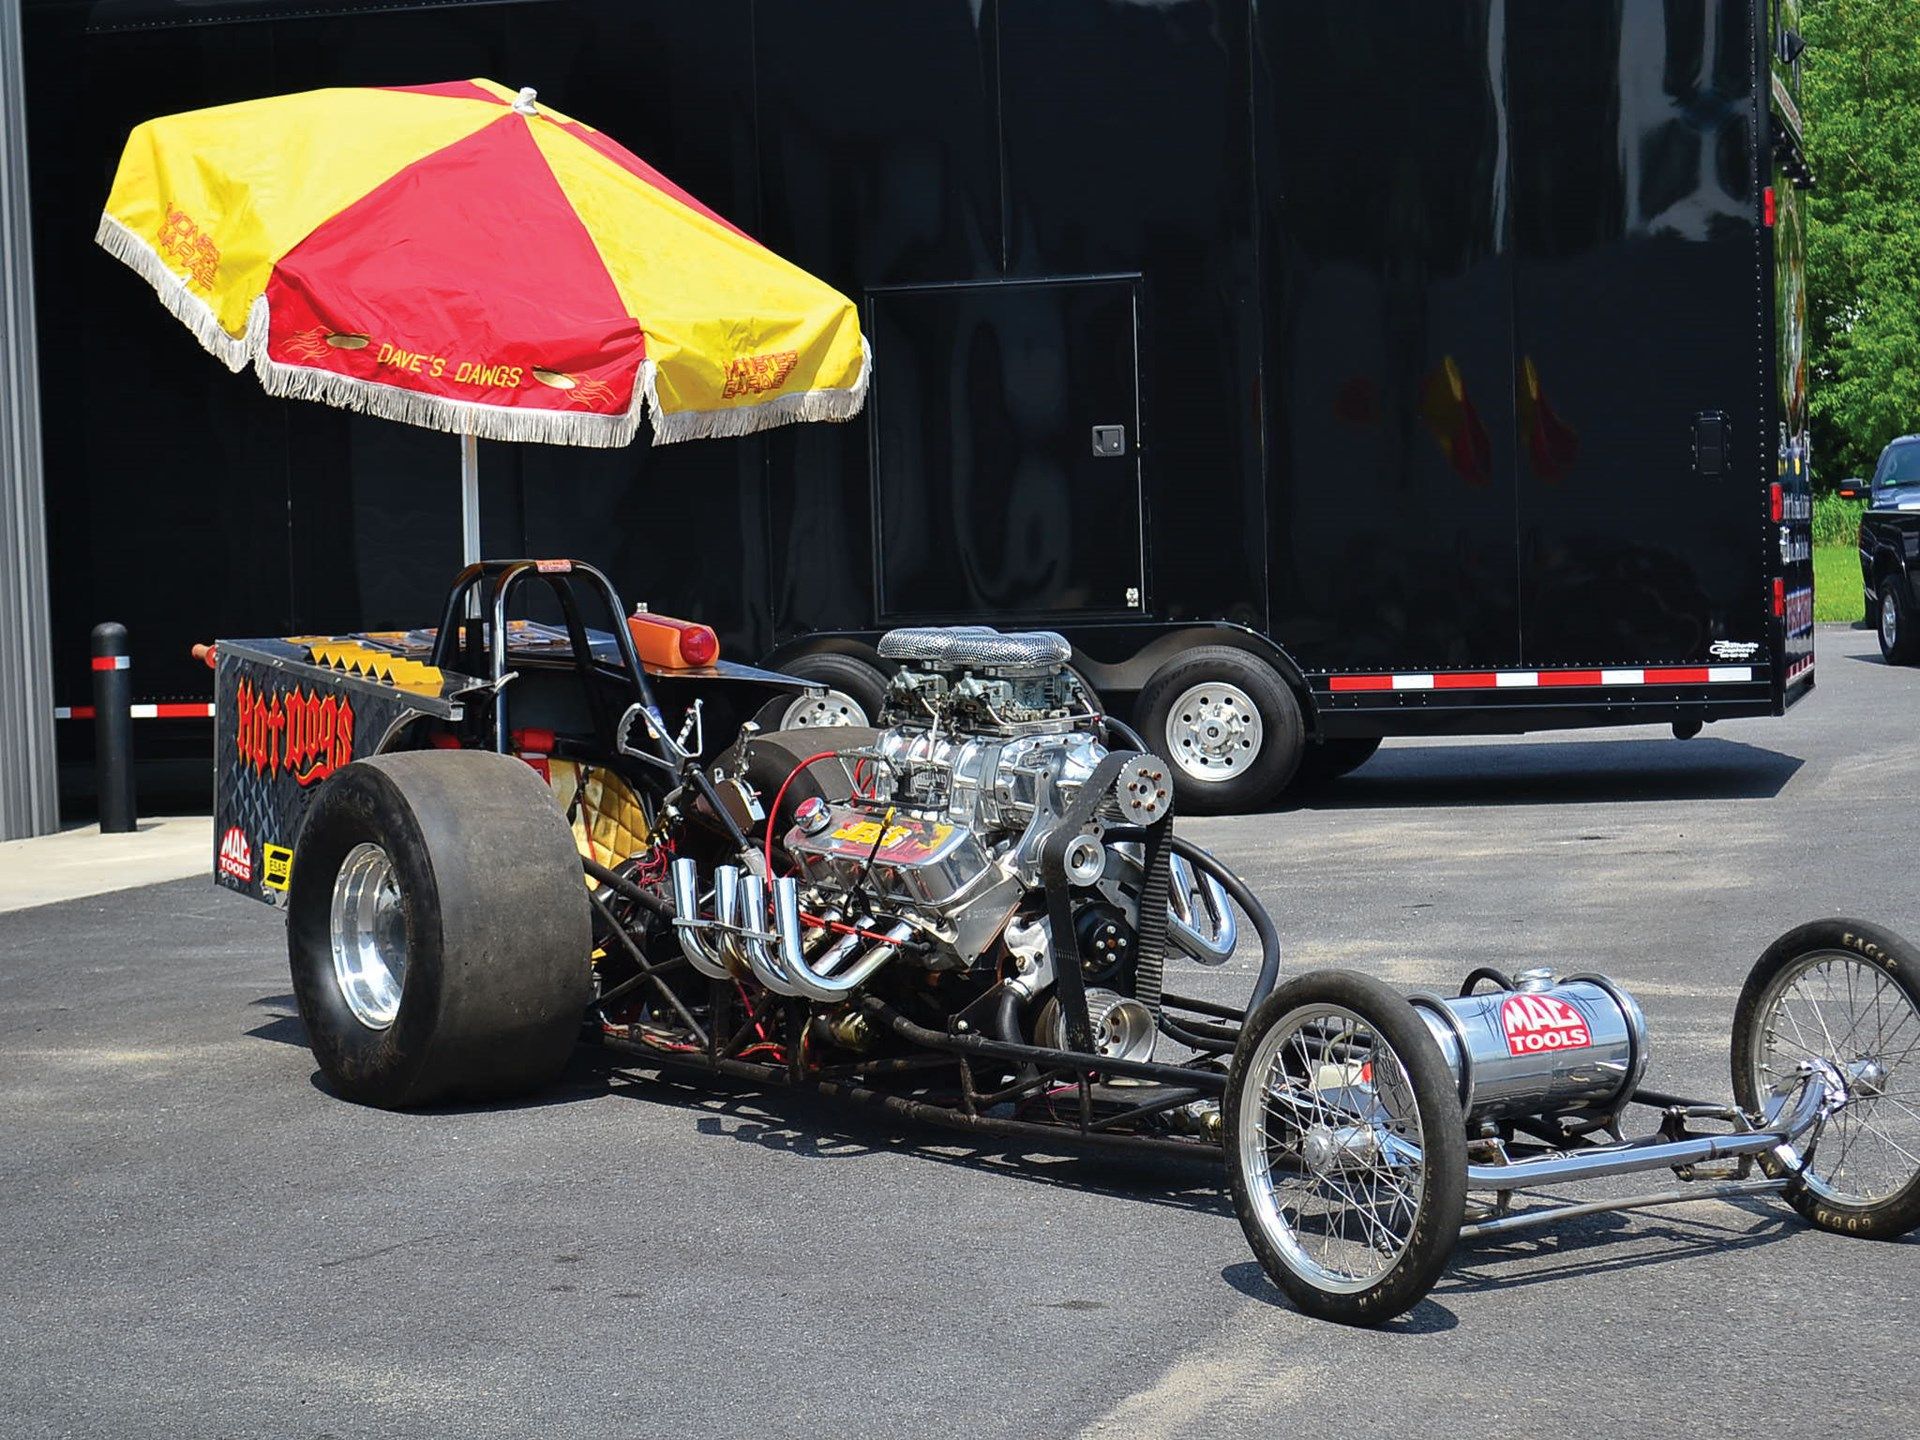 Monster garage dragster hot dog cart